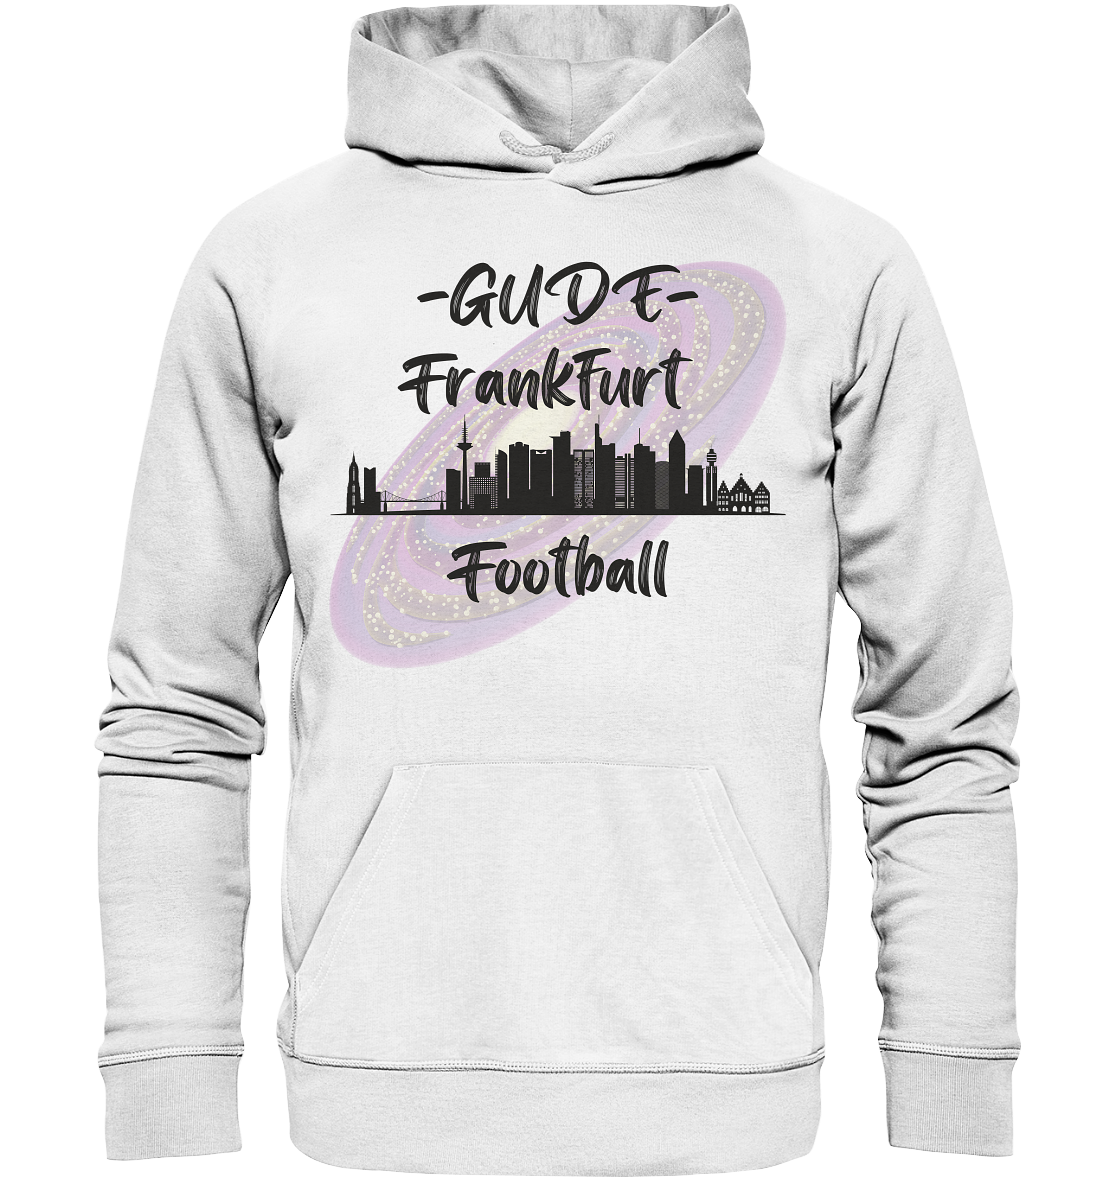 Gude Frankfurt Football (schwarze Schrift) - Organic Basic Hoodie - Football Unity Football Unity